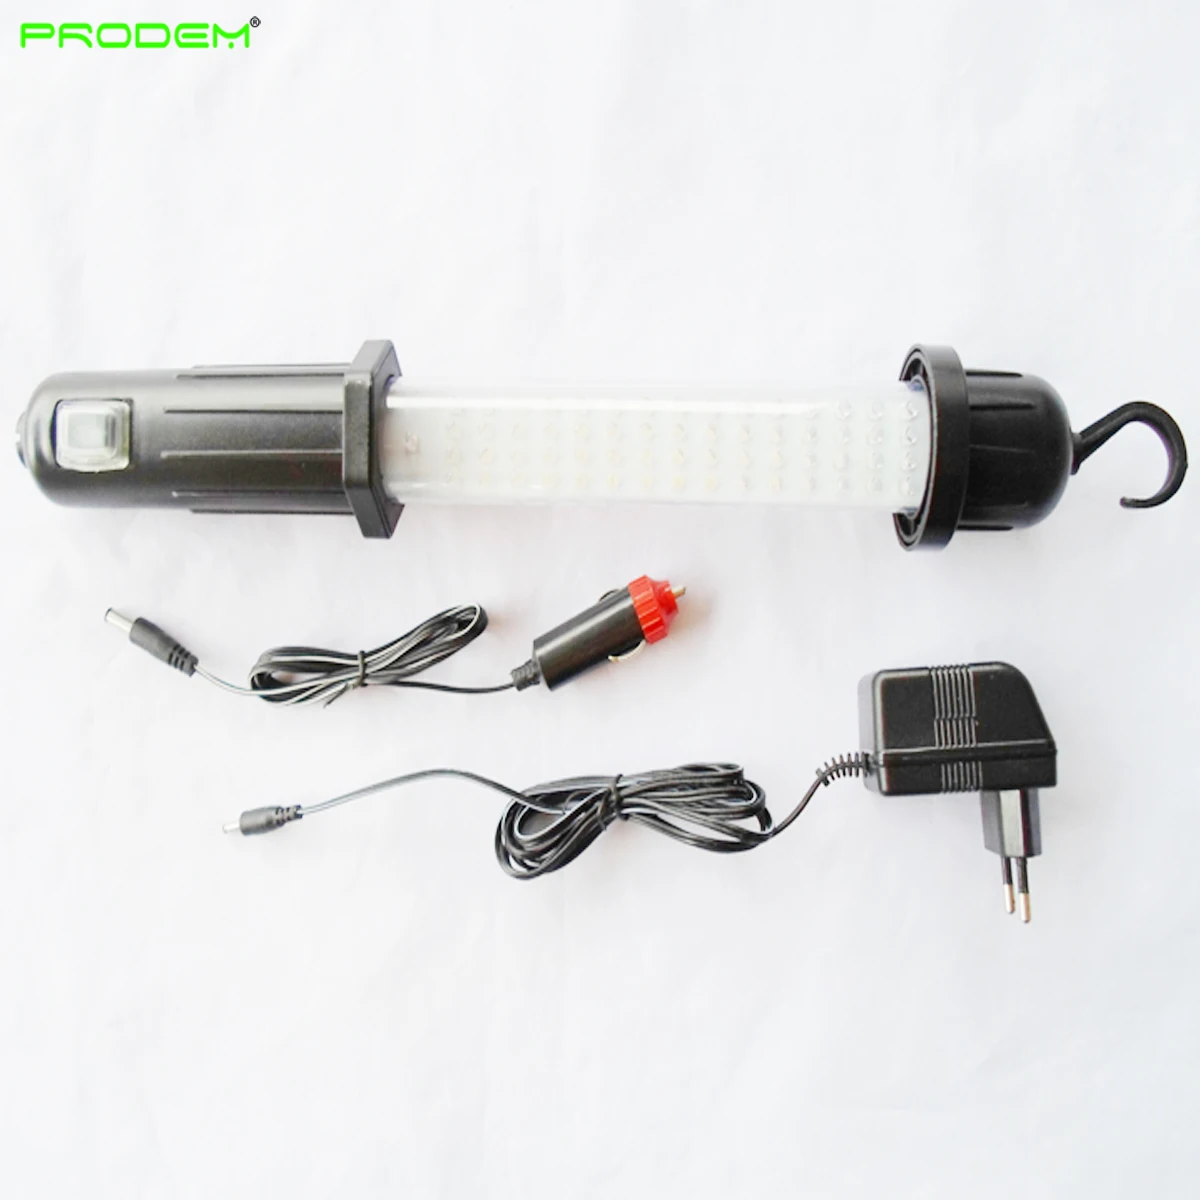 저렴한 충전식 60 LED 비상 조명 LED 작업등 4 팩, 핸드헬드 램프 배터리 자동차 길가에 사용